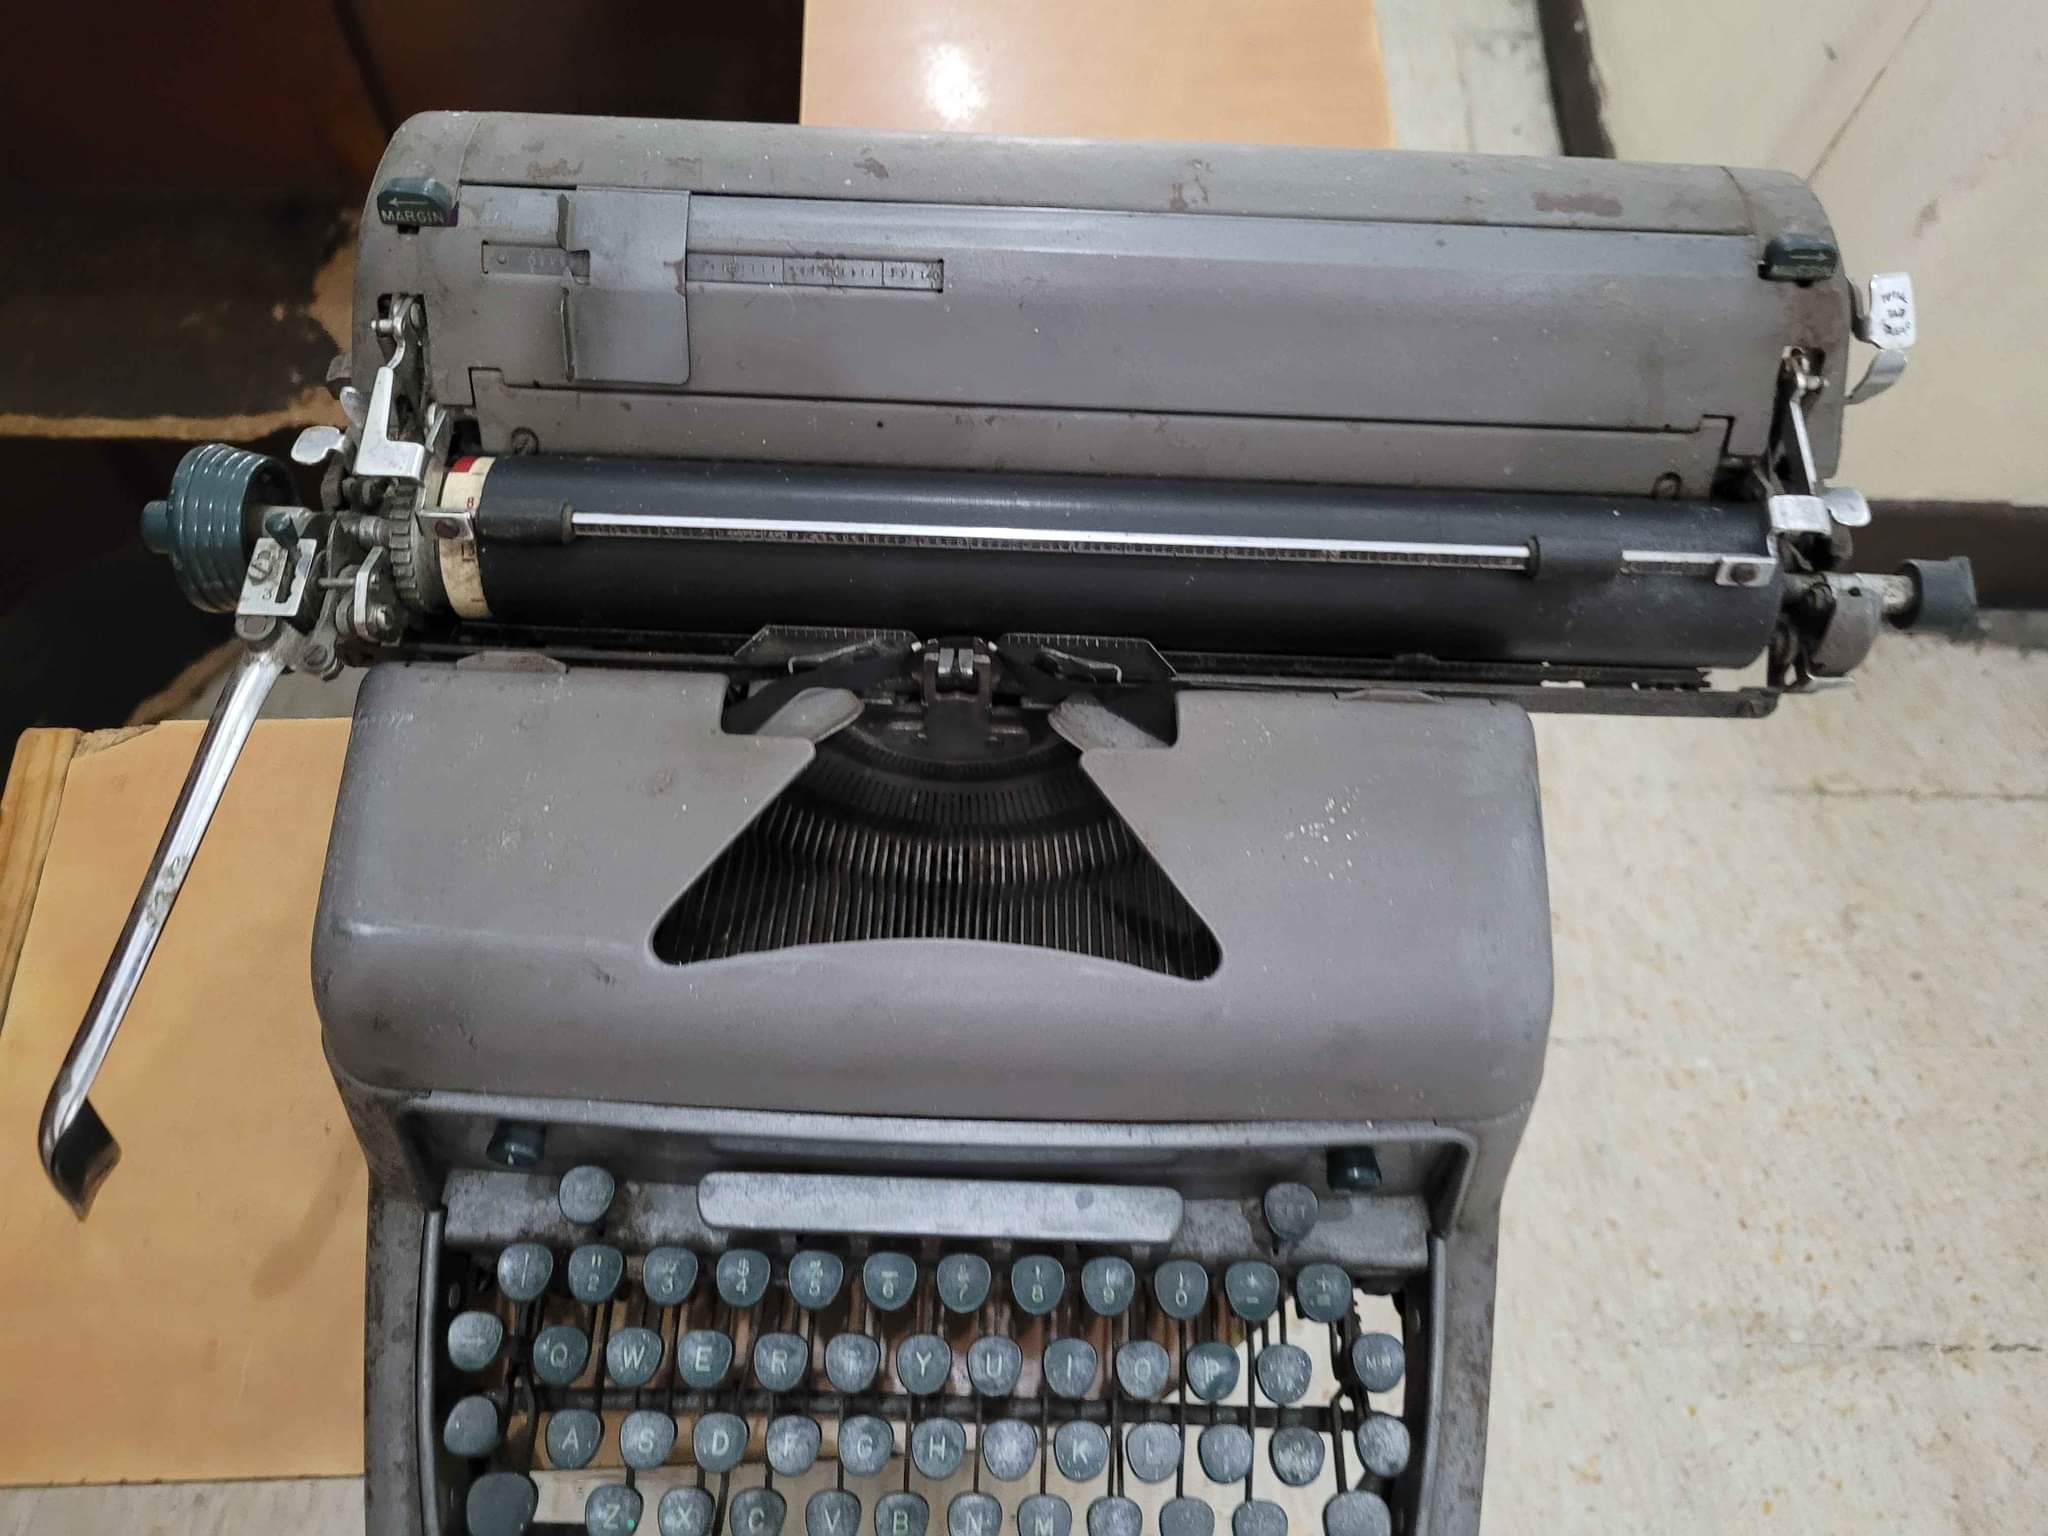 Vendo 2 maquinas de escribir antiguas marca ADLER y SMITH- CORONA solo les falta mantenimiento